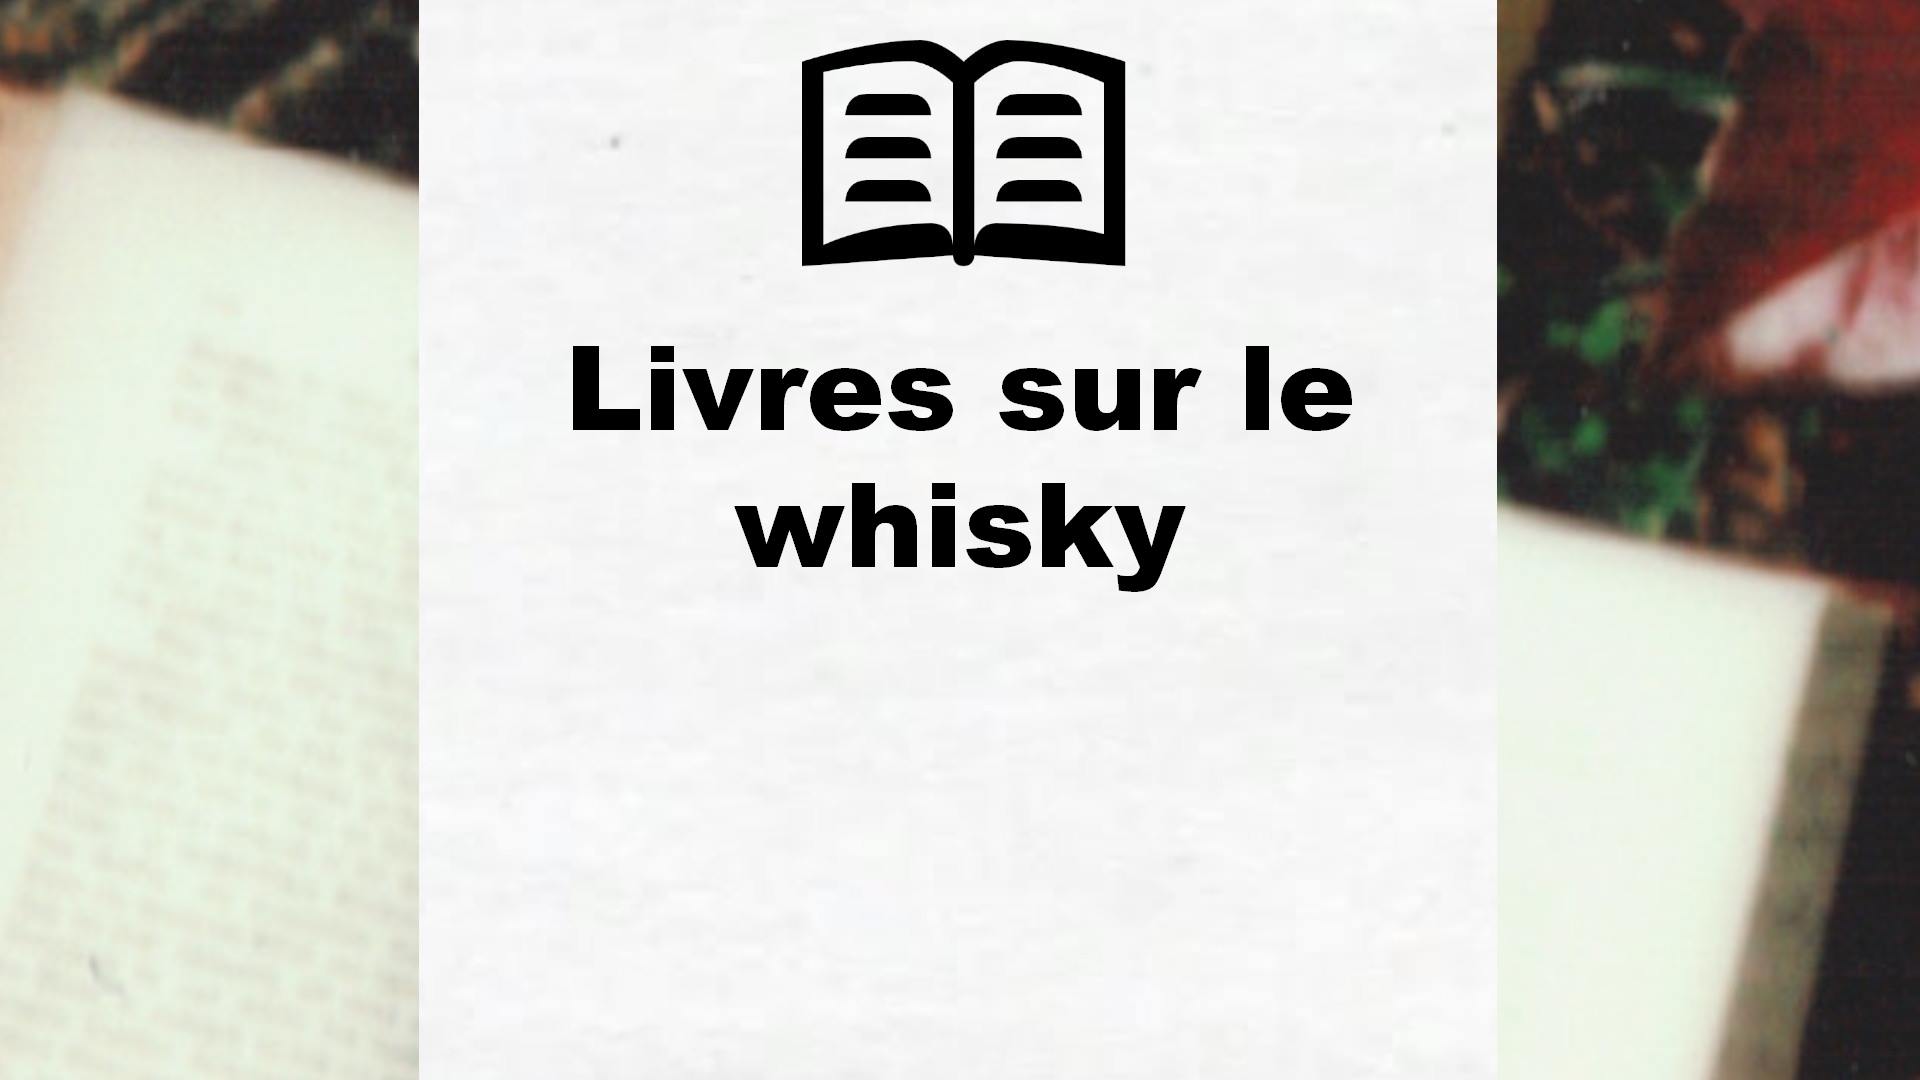 Livres sur le whisky